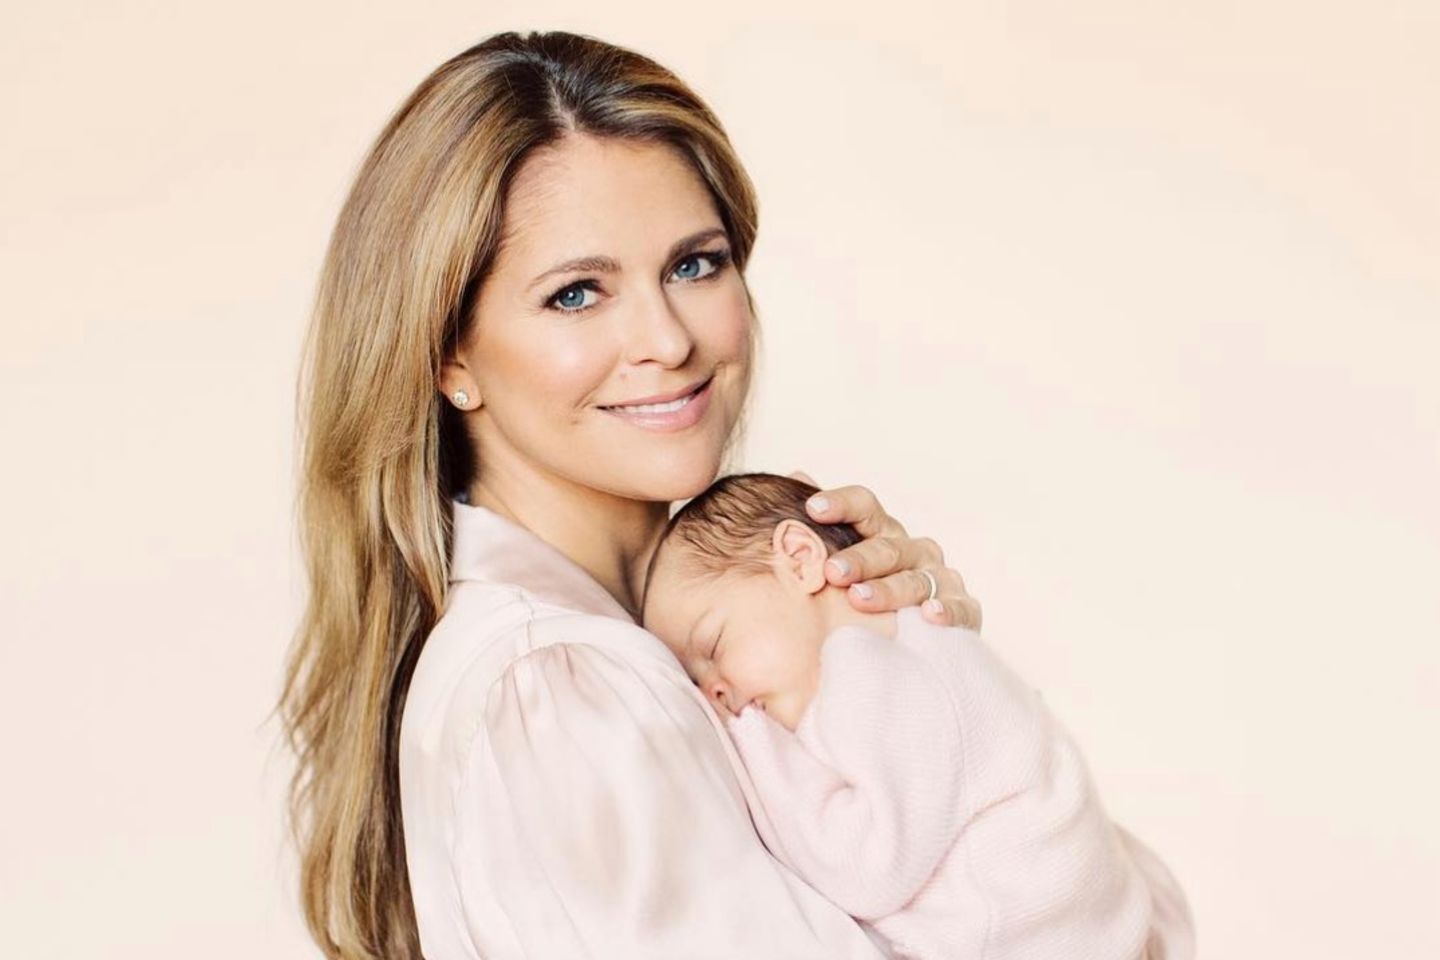 27. April 2018  Mamas ganzer Stolz: Prinzessin Madeleine posiert für die Fotografin in einer blassrosa Bluse. Tochter Prinzessin Adrienne schmiegt sich schlafend an Mamas Brust. Familienglück pur! 